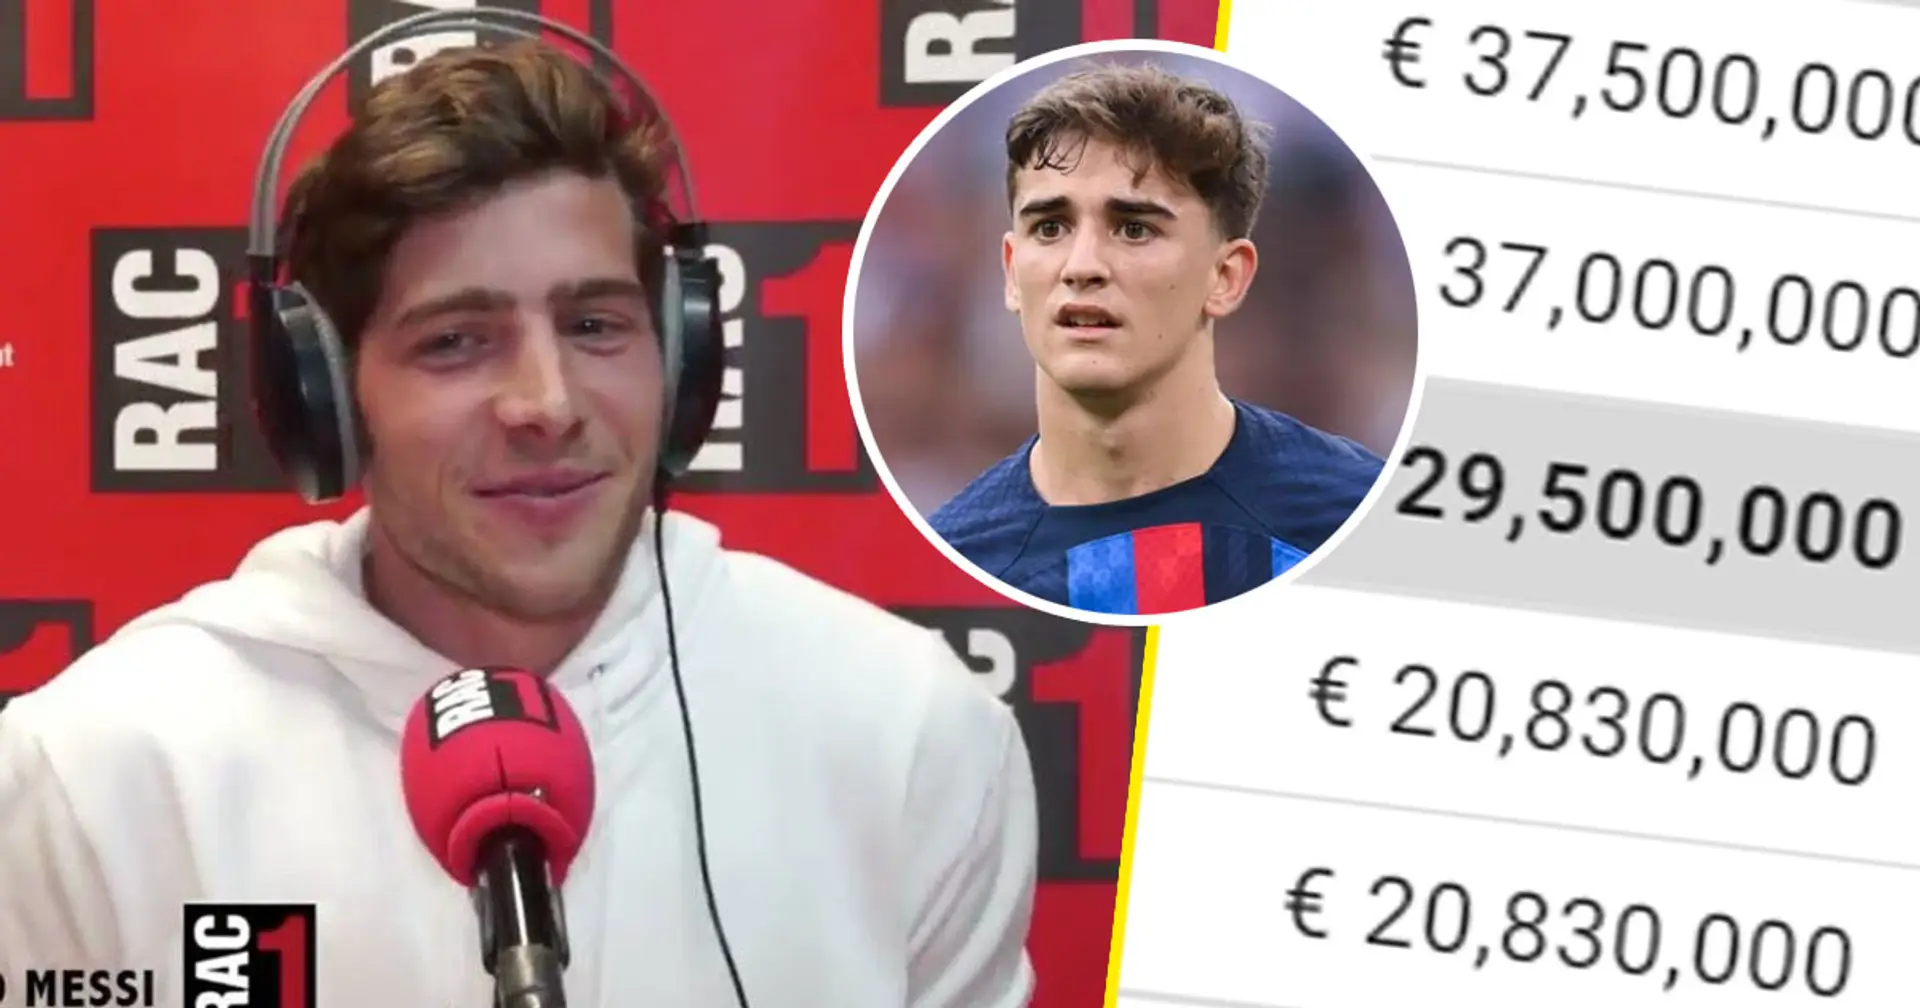 Roberto vergleicht sein Gehalt mit dem von jungen Spielern, die von Barca B befördert werden – sagt er die Wahrheit? 